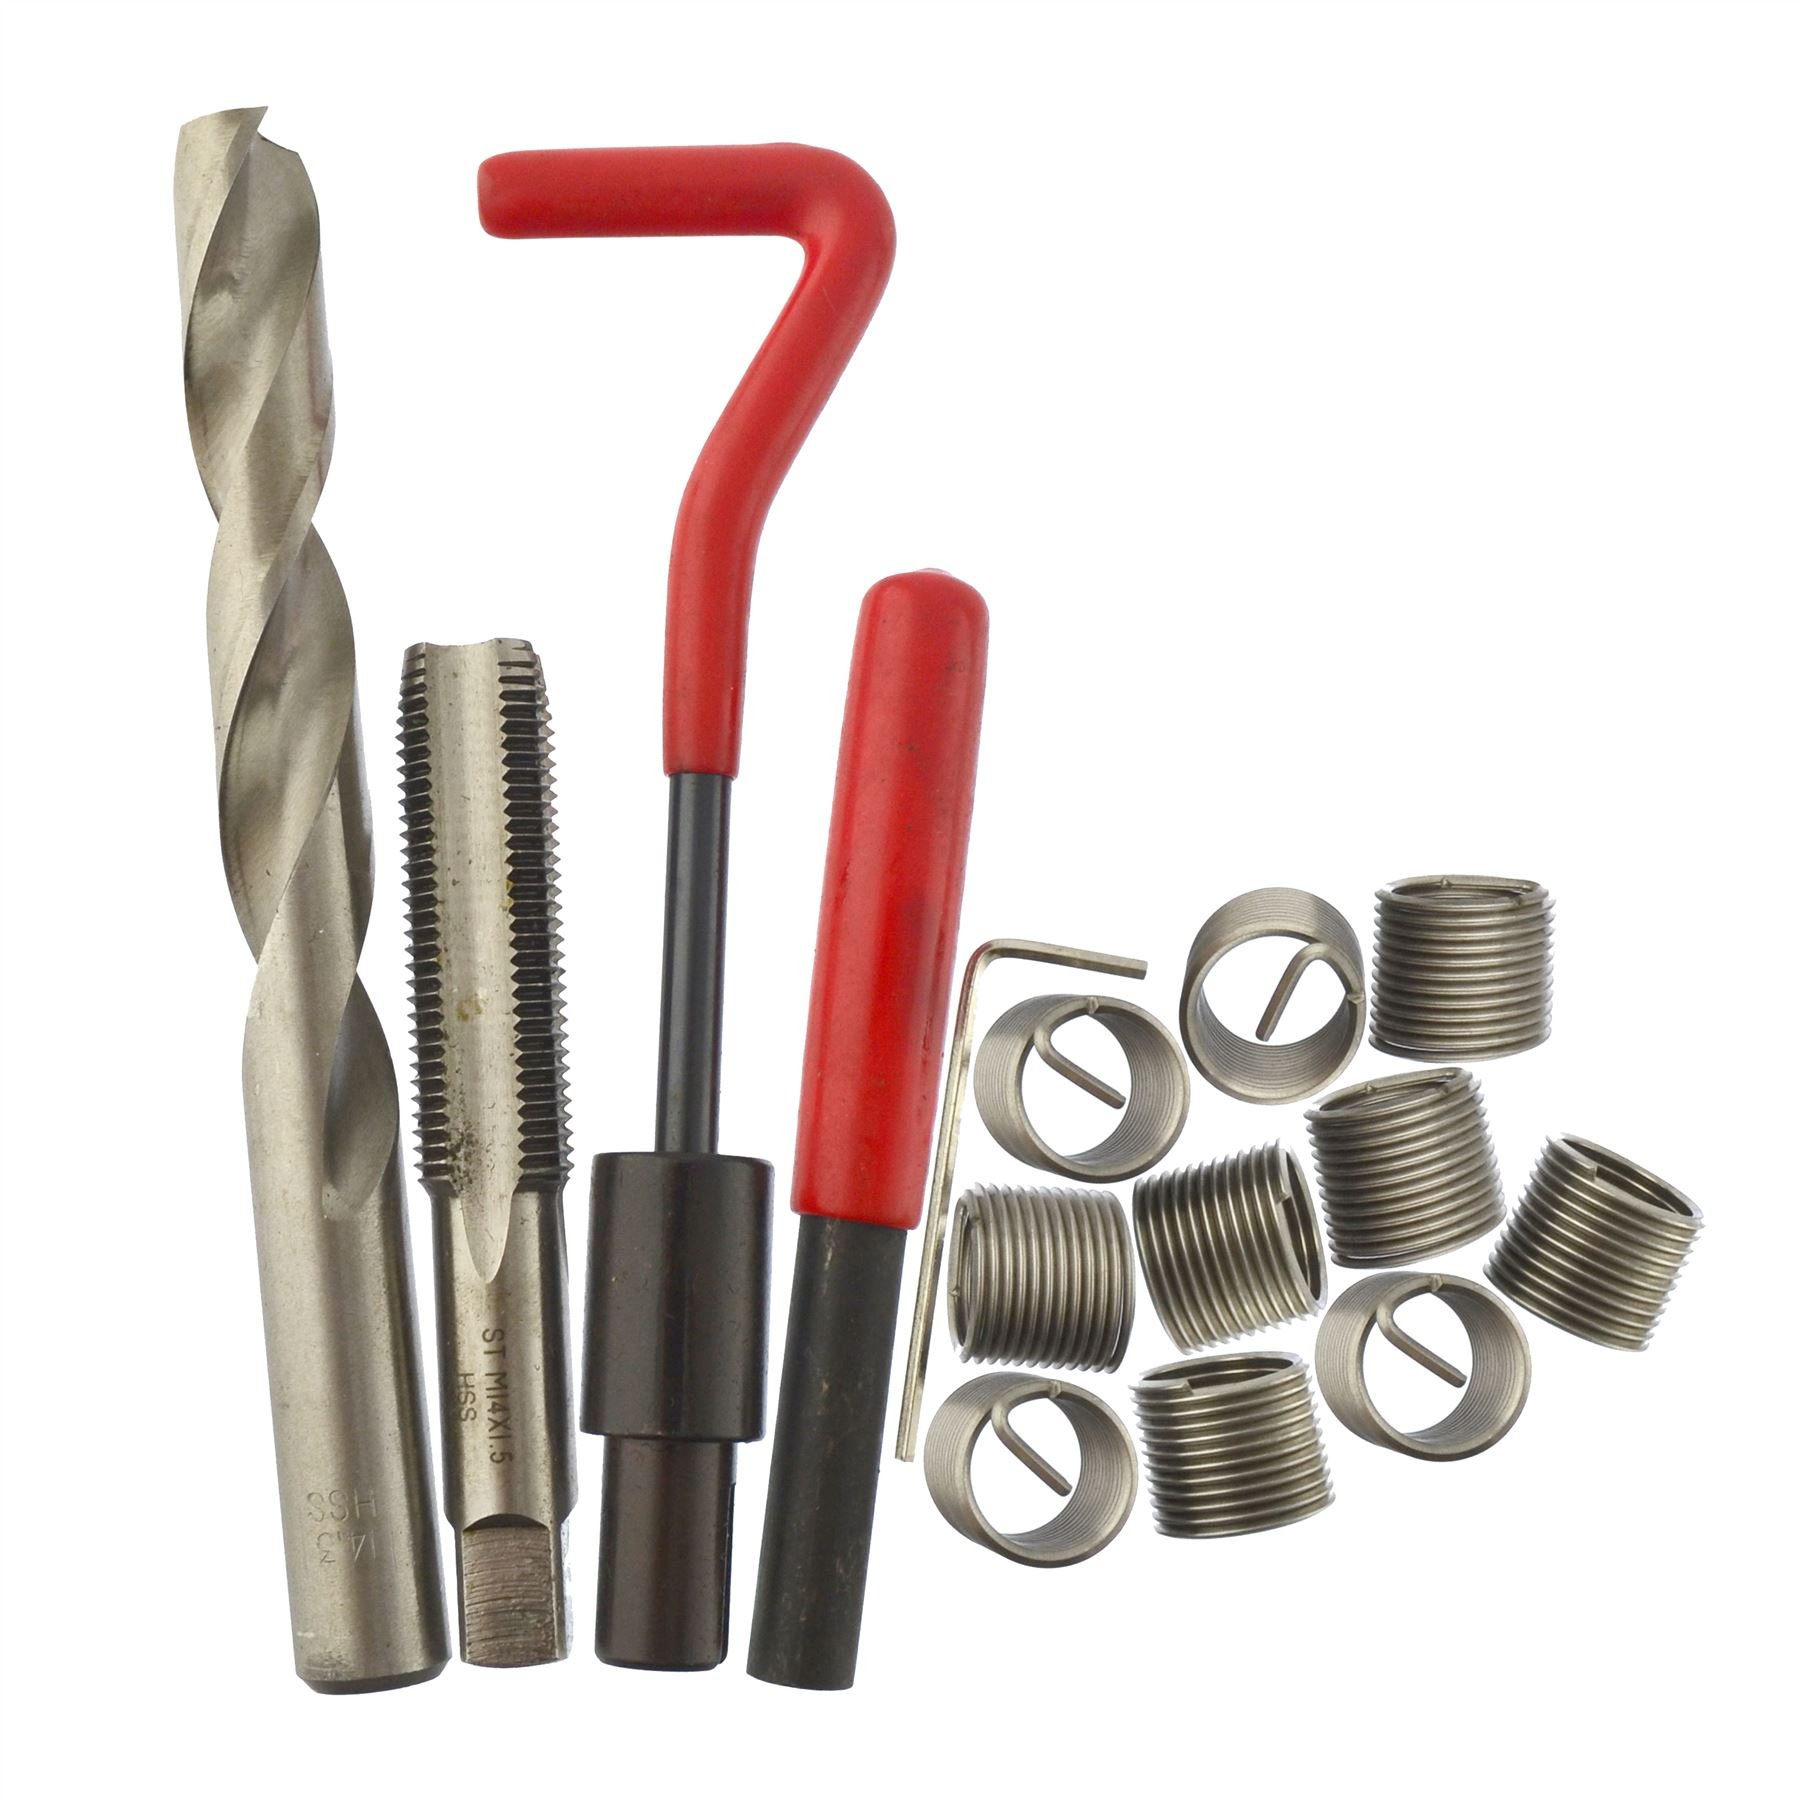 AB Tools M14 x 1,5 mm kit Reparatur Filetieren/helicoil 9PC beschädigt 15PC EIN025 von AB Tools